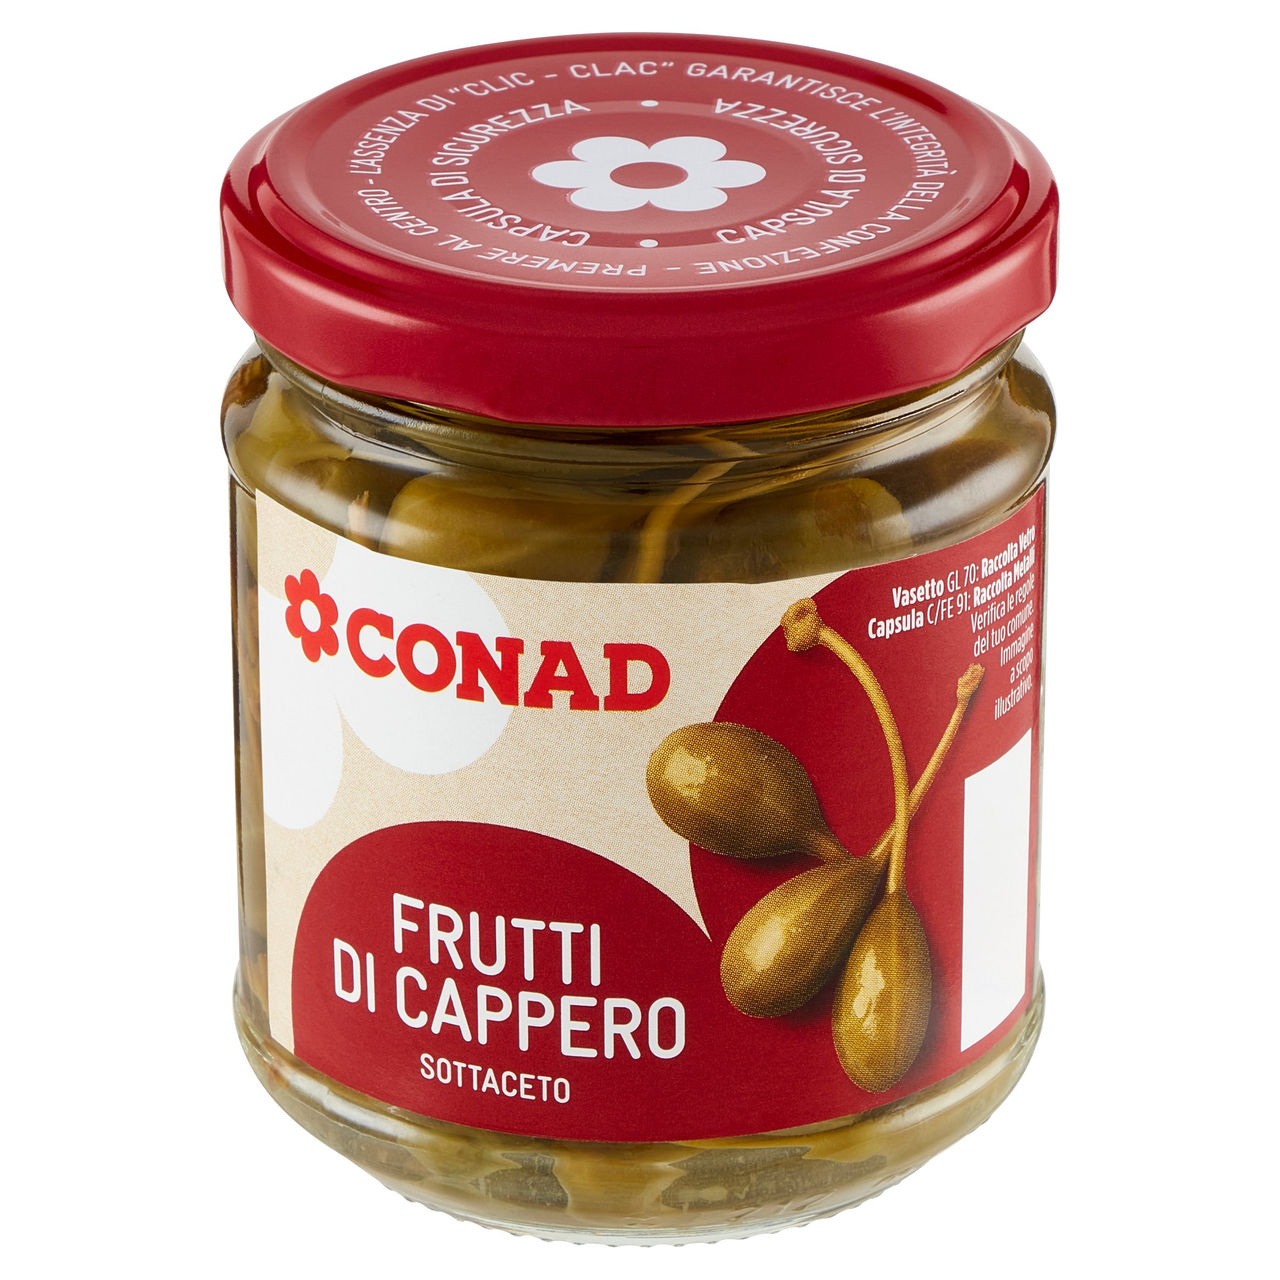 Frutti di Cappero in aceto Conad in vendita online